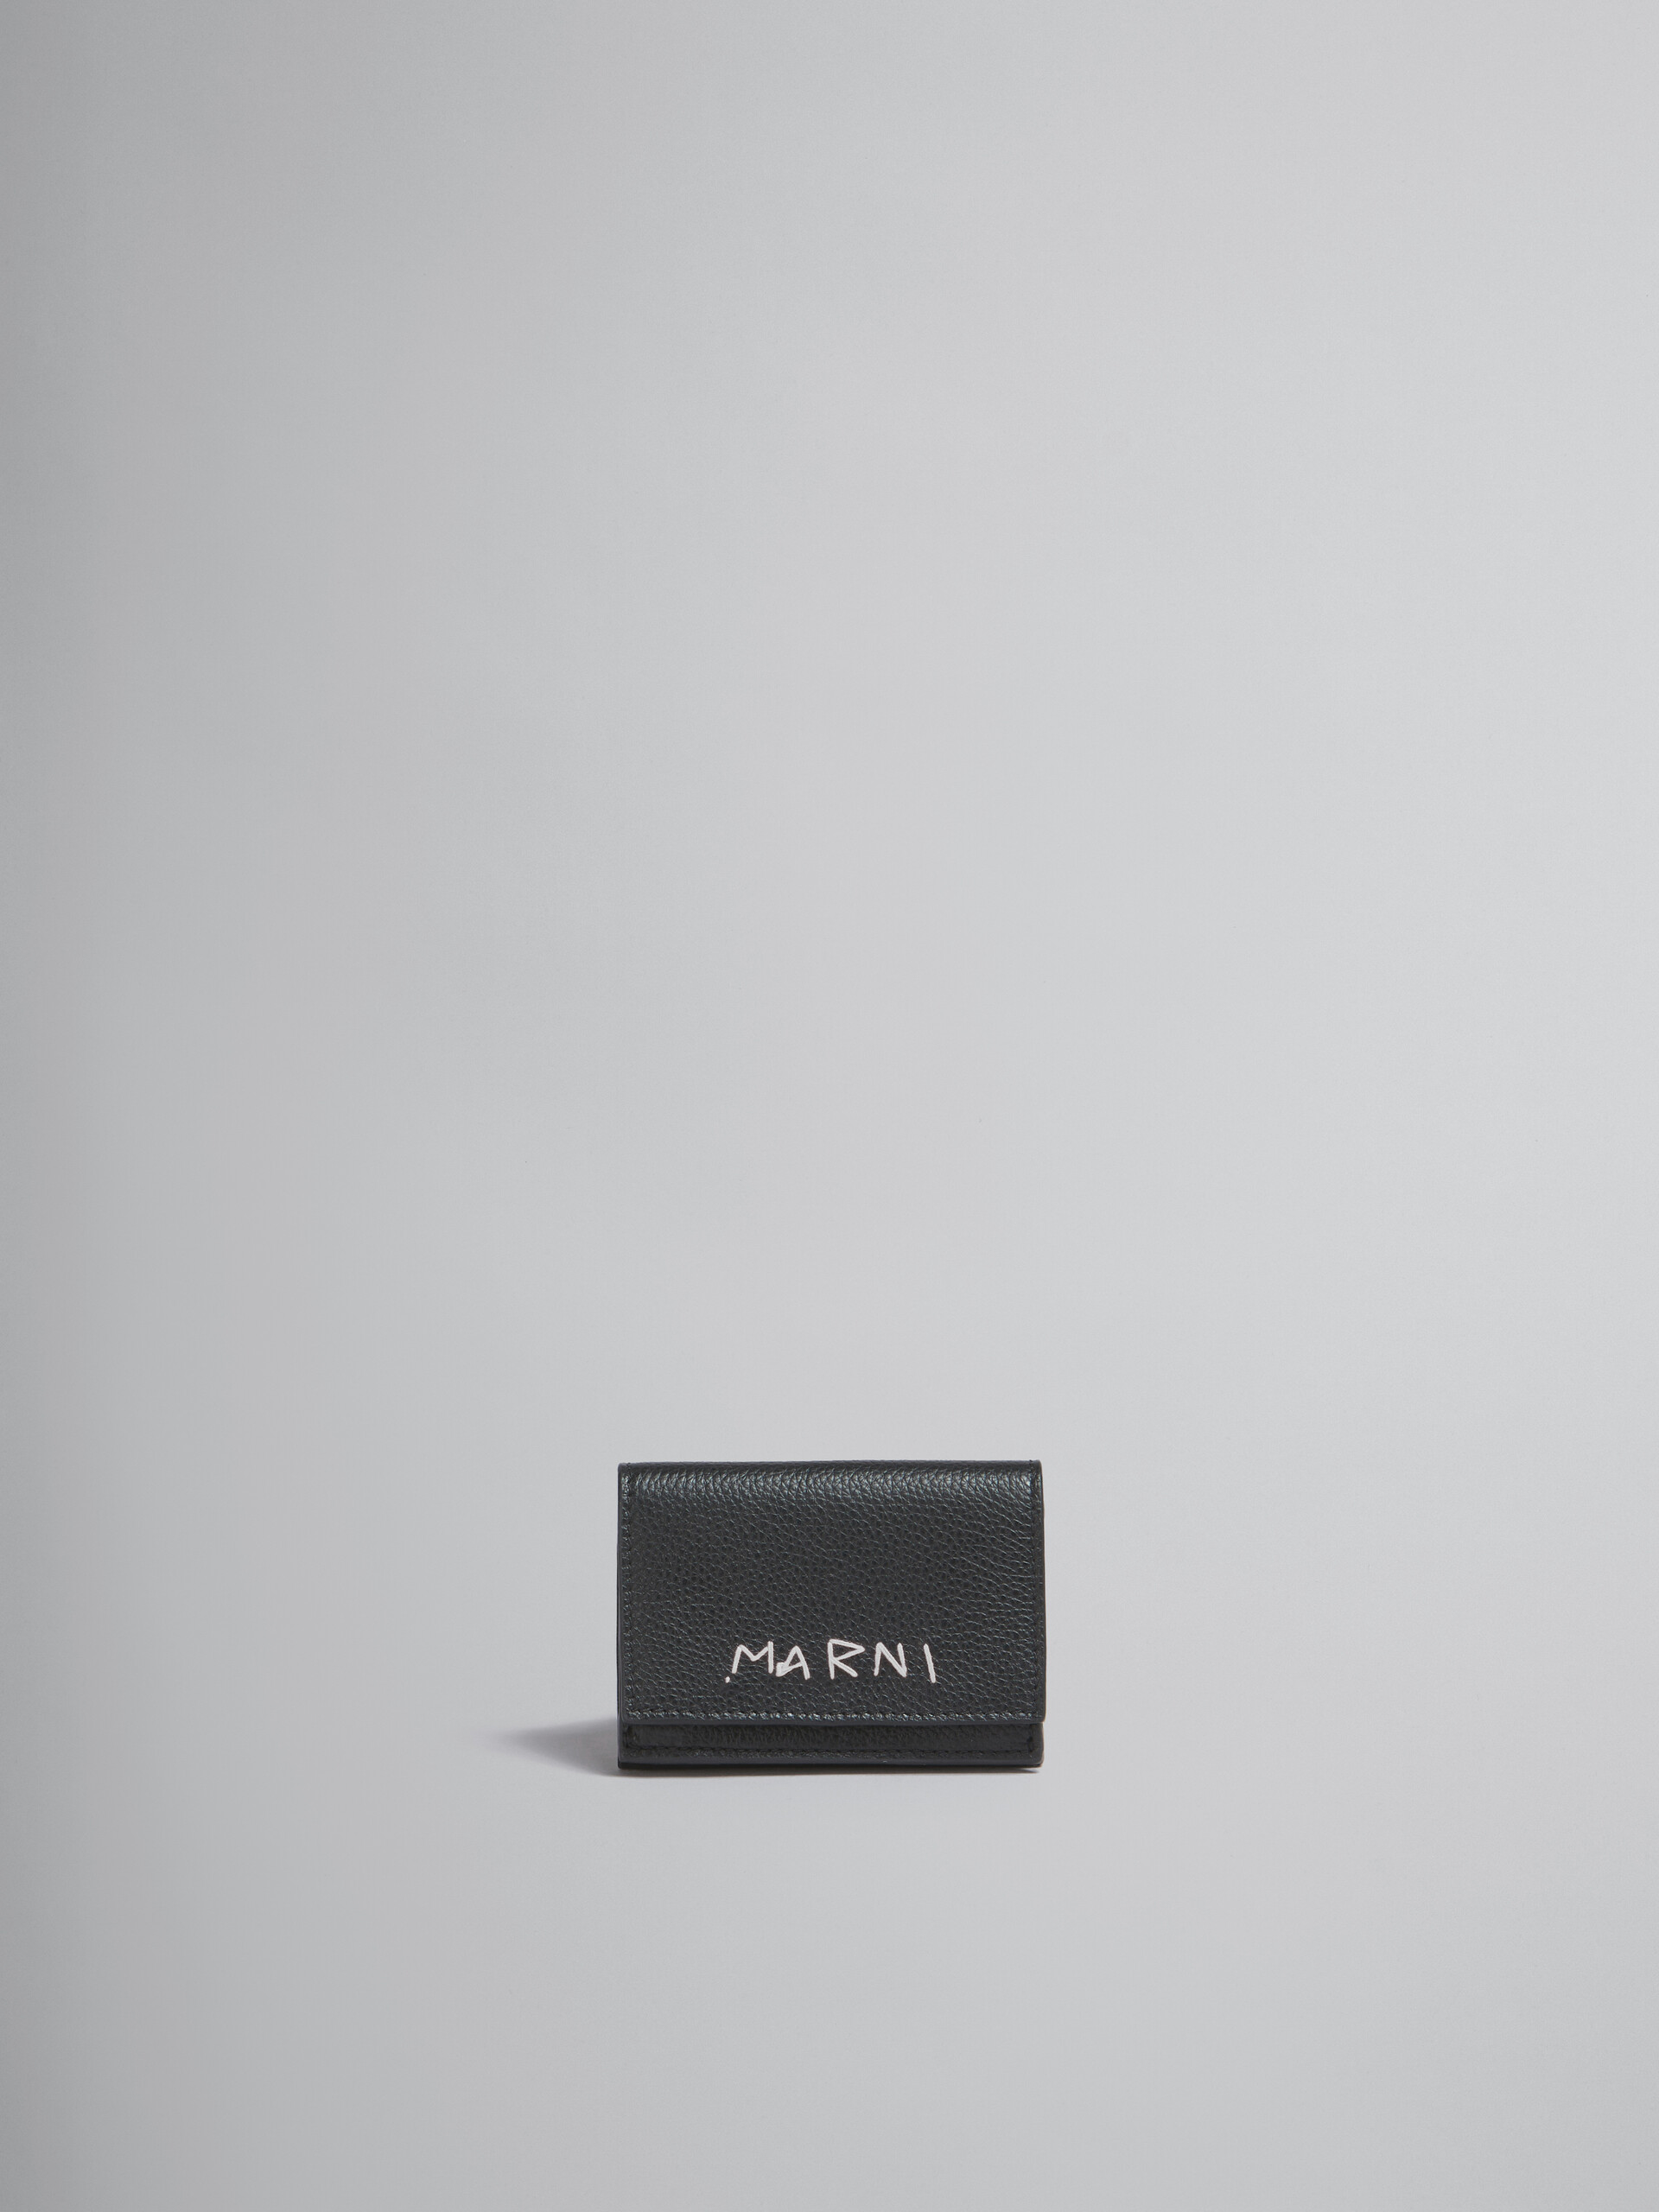 ブラック レザー製 三つ折りウォレット、マルニメンディング装飾 - 財布 - Image 1